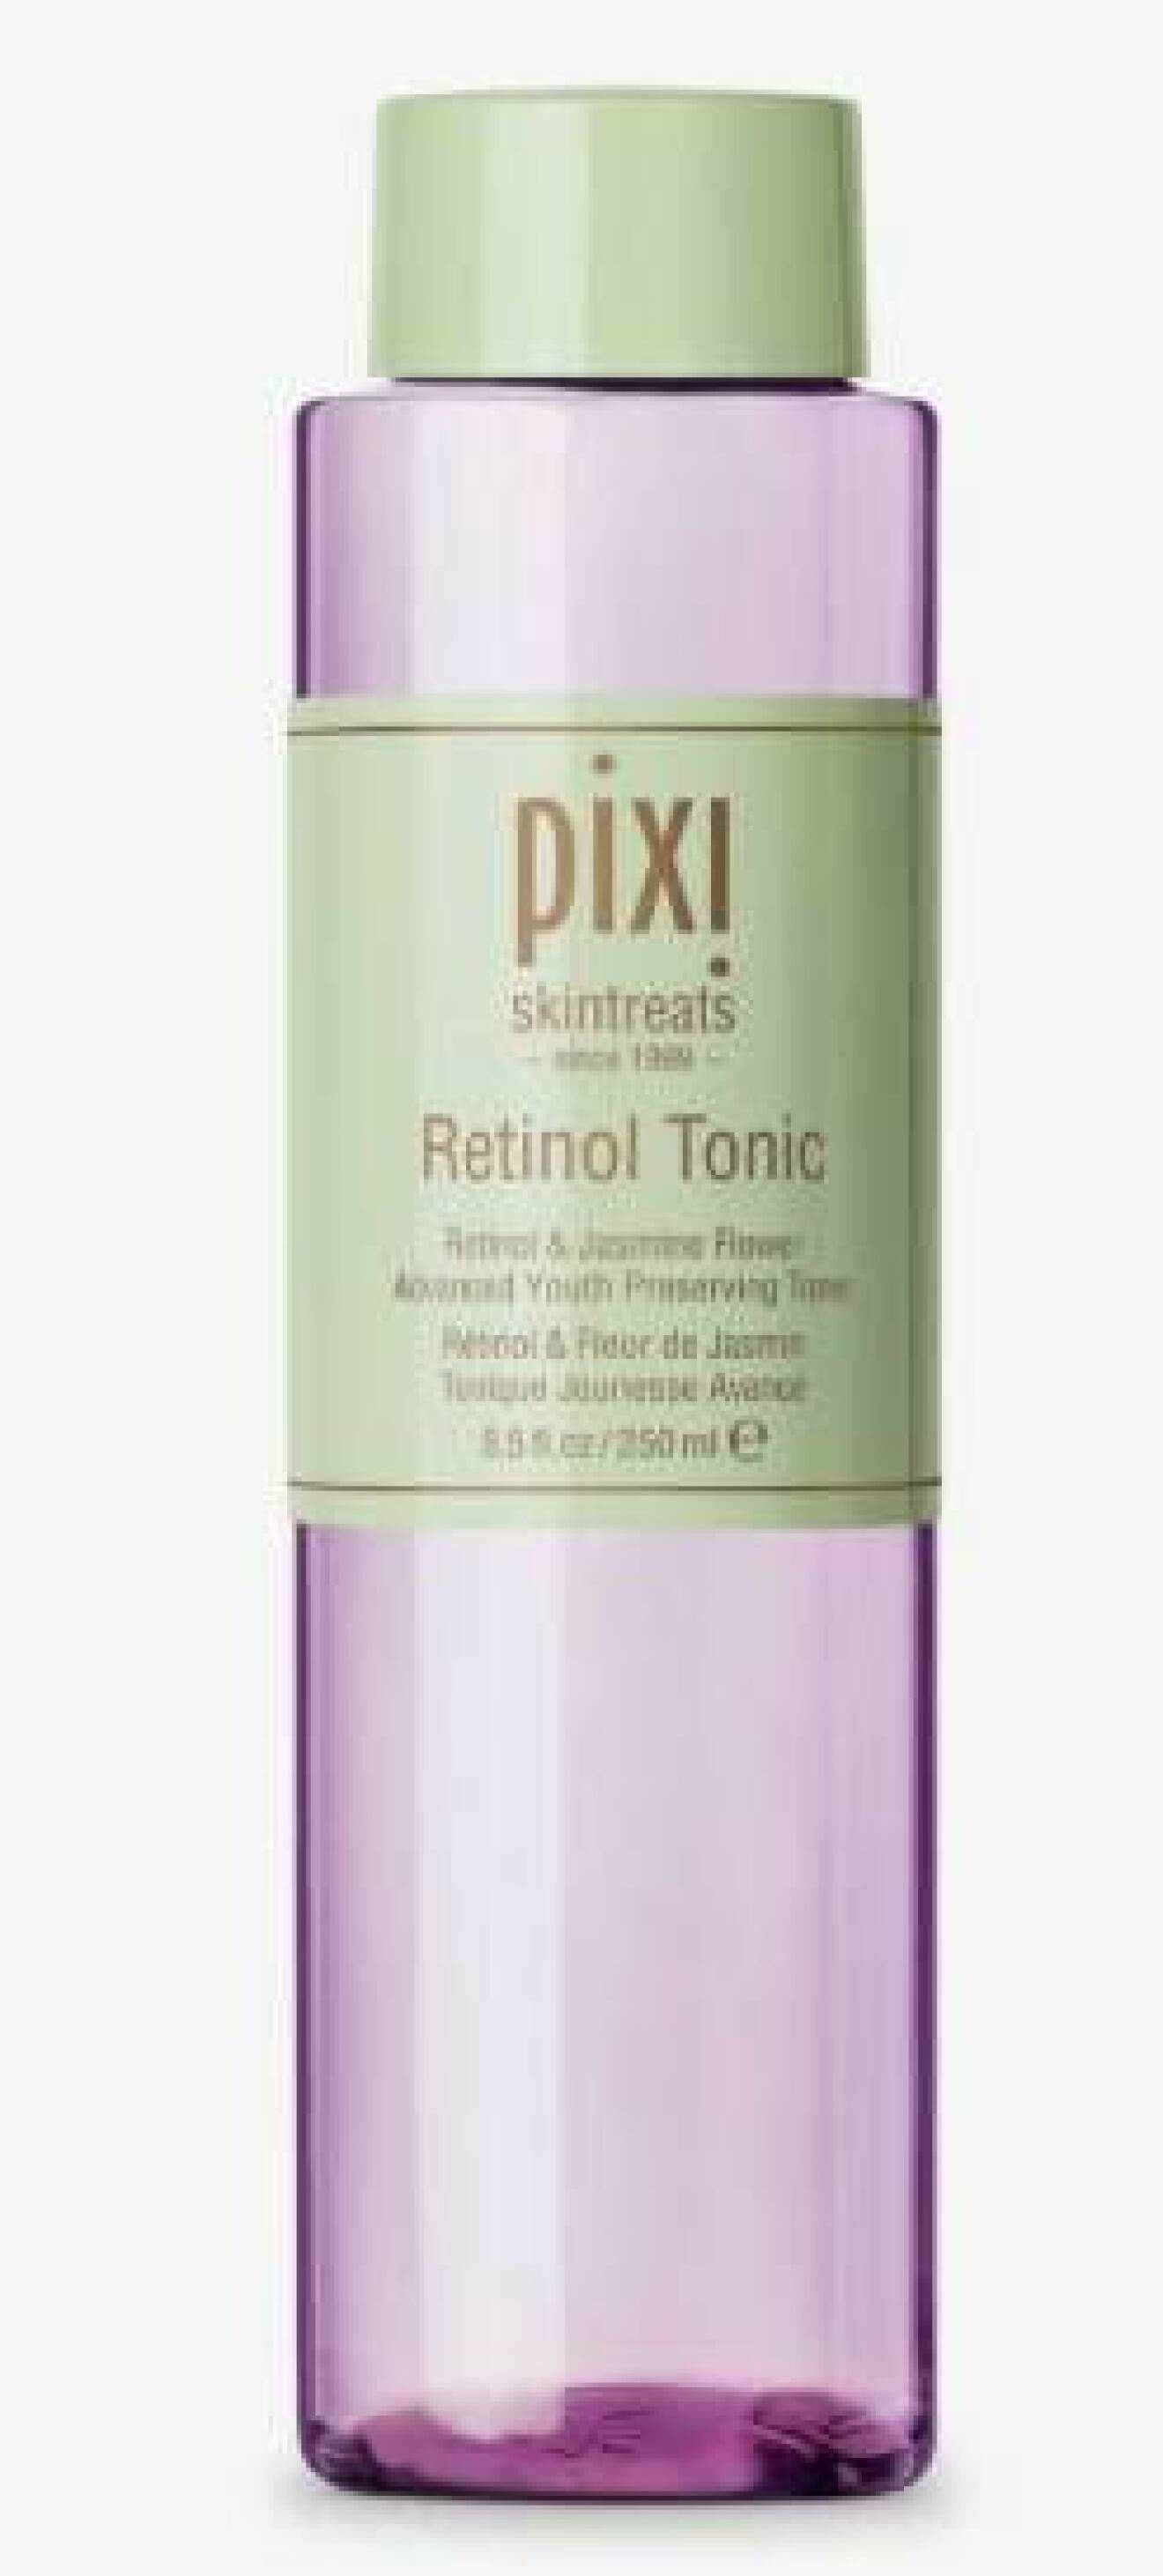 Pixi retinol tonic är ett ansiktsvatten som gör hudytan fin